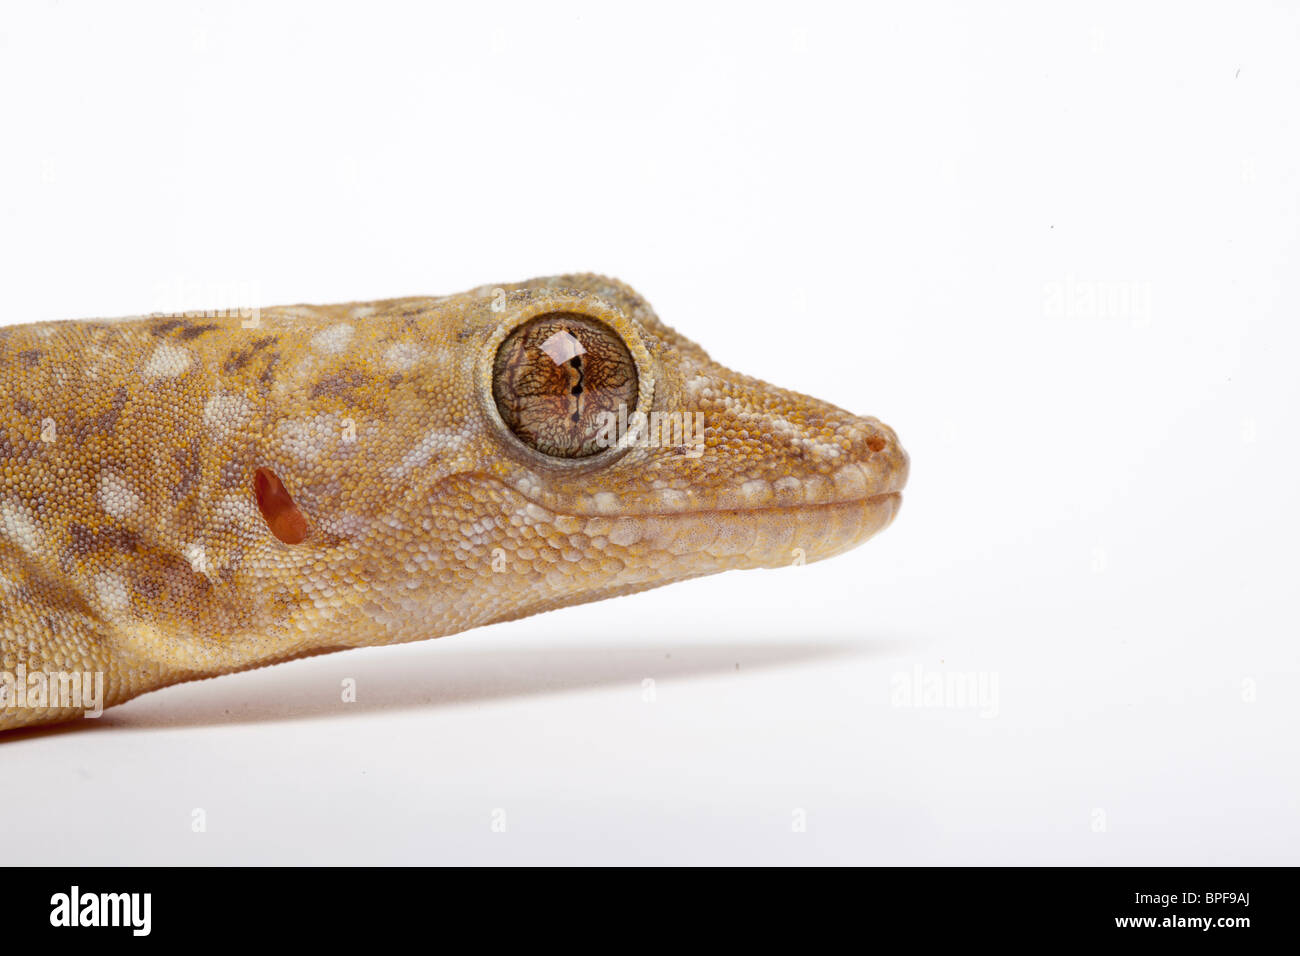 Marbled gecko, Gekko grossmanni Stock Photo